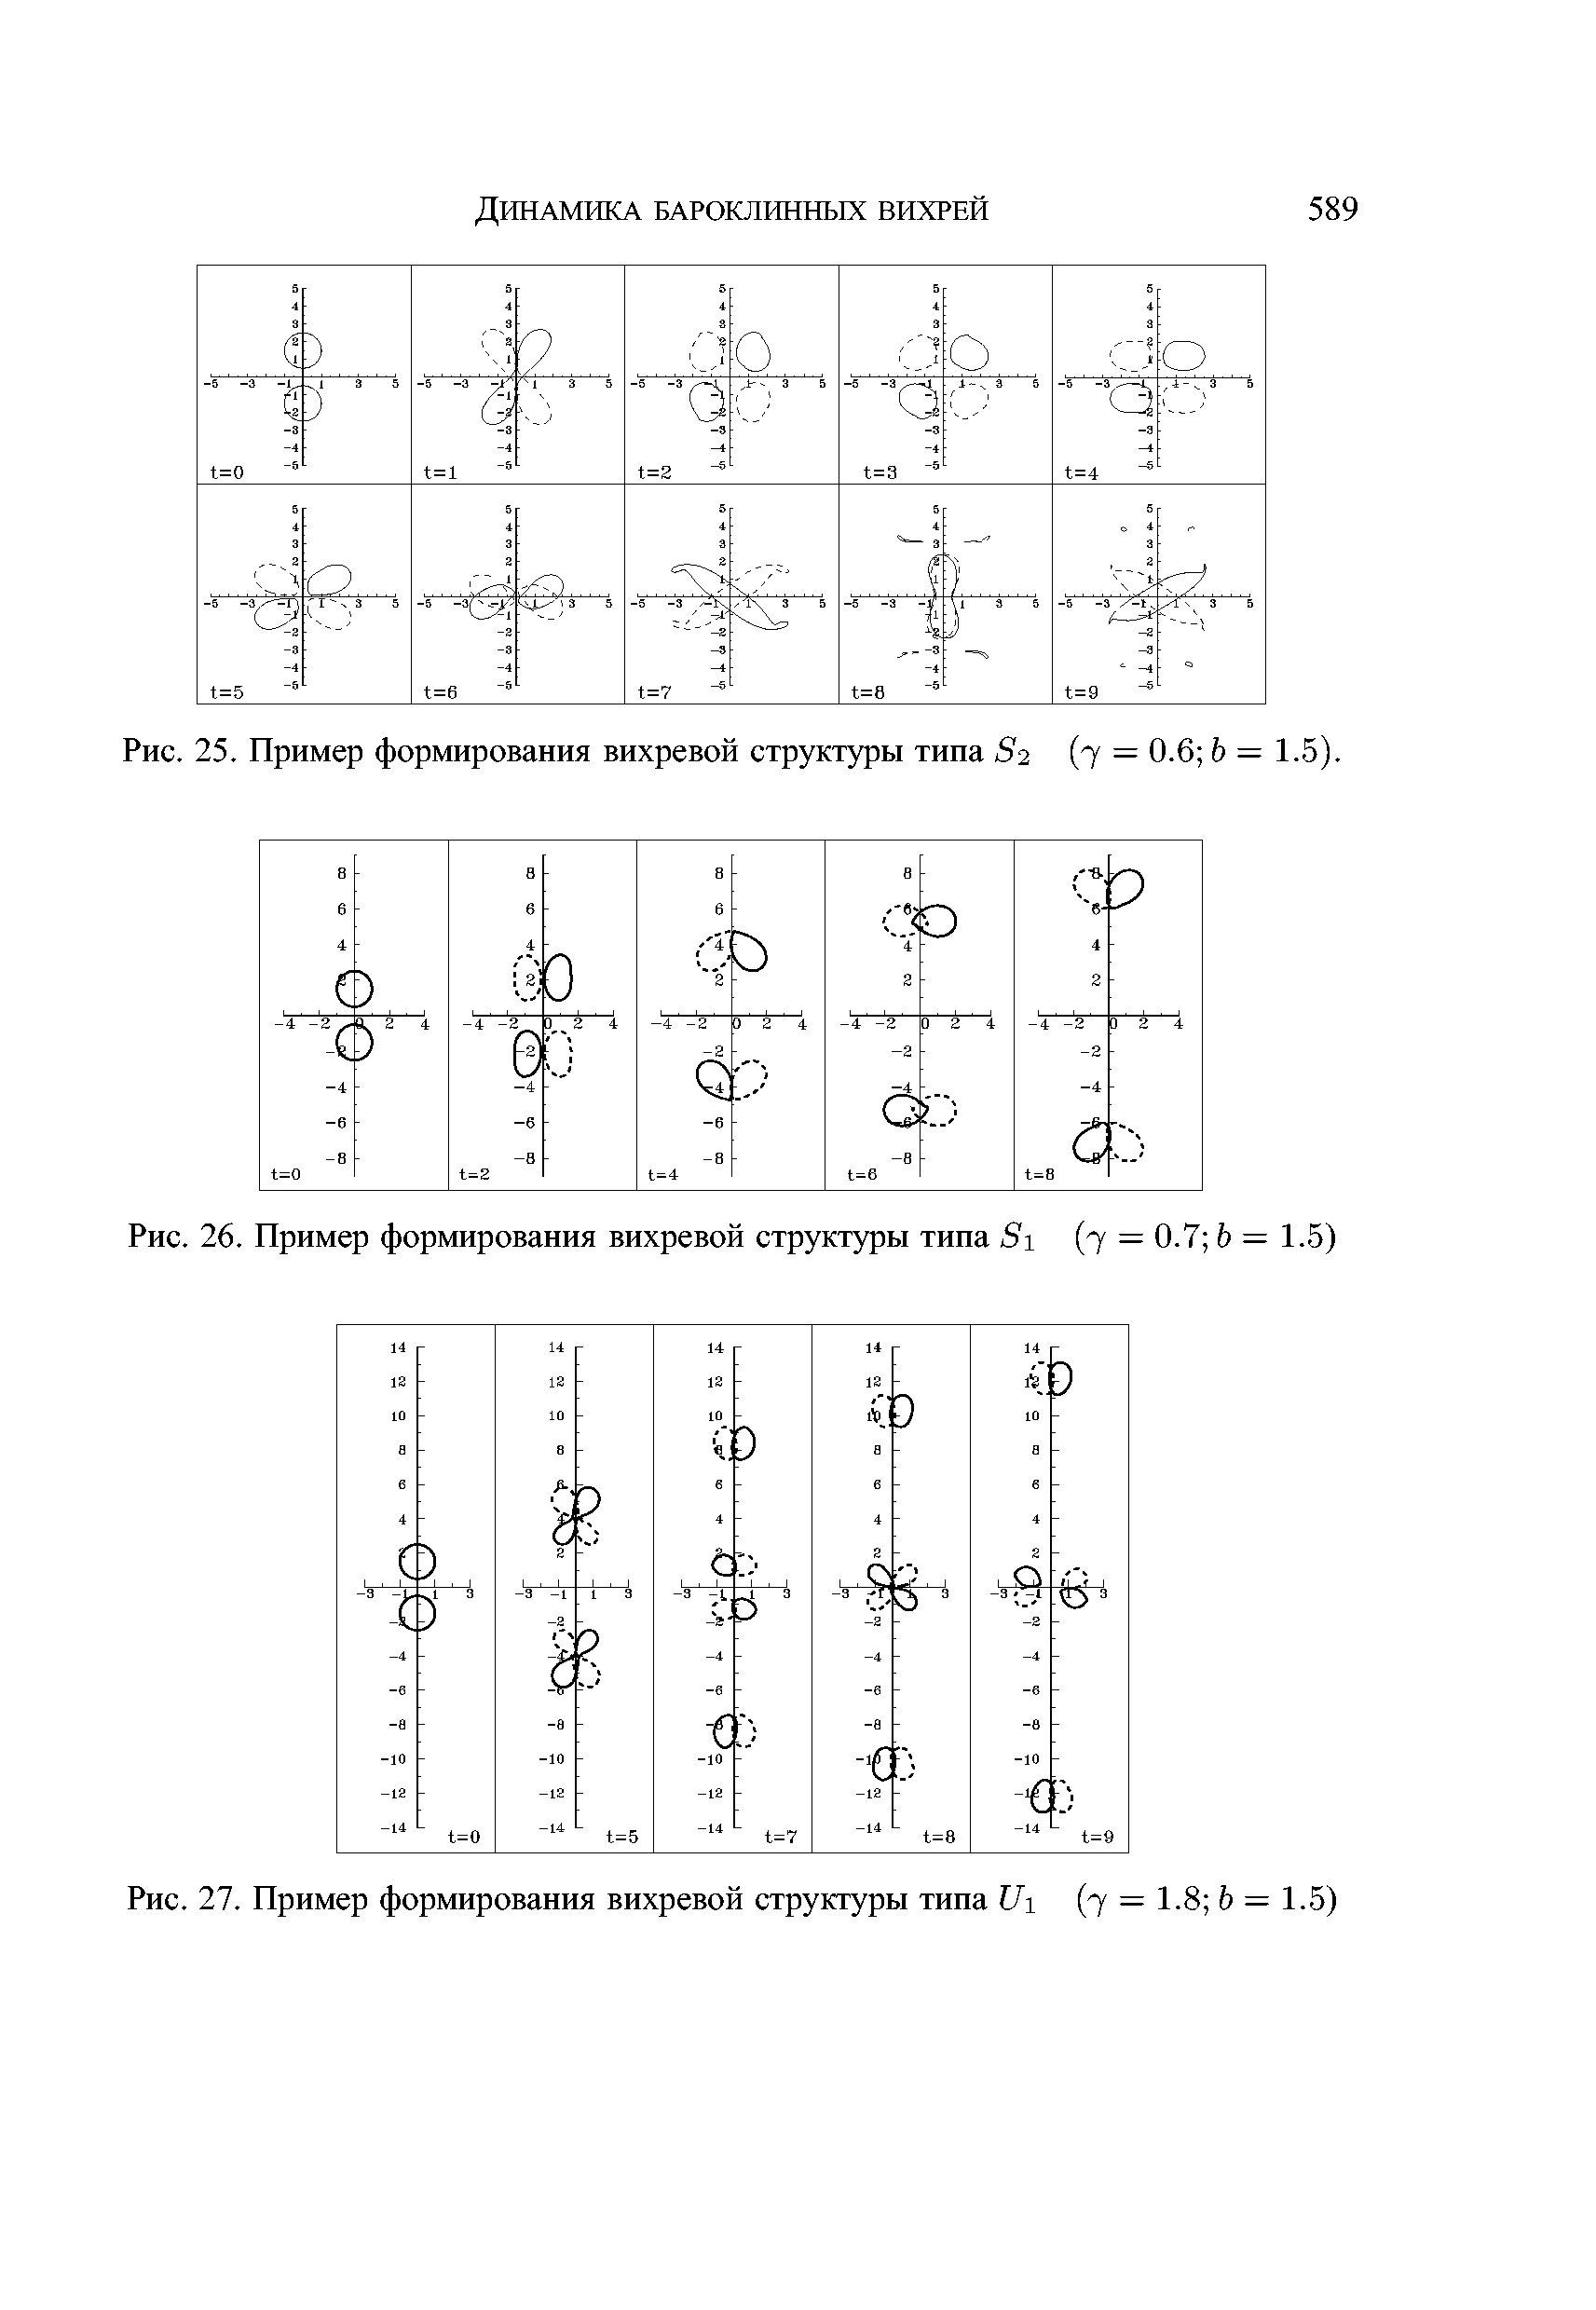 Рис. 26. Пример формирования вихревой структуры типа х (7 = 0.7 Ь = 1.5)
